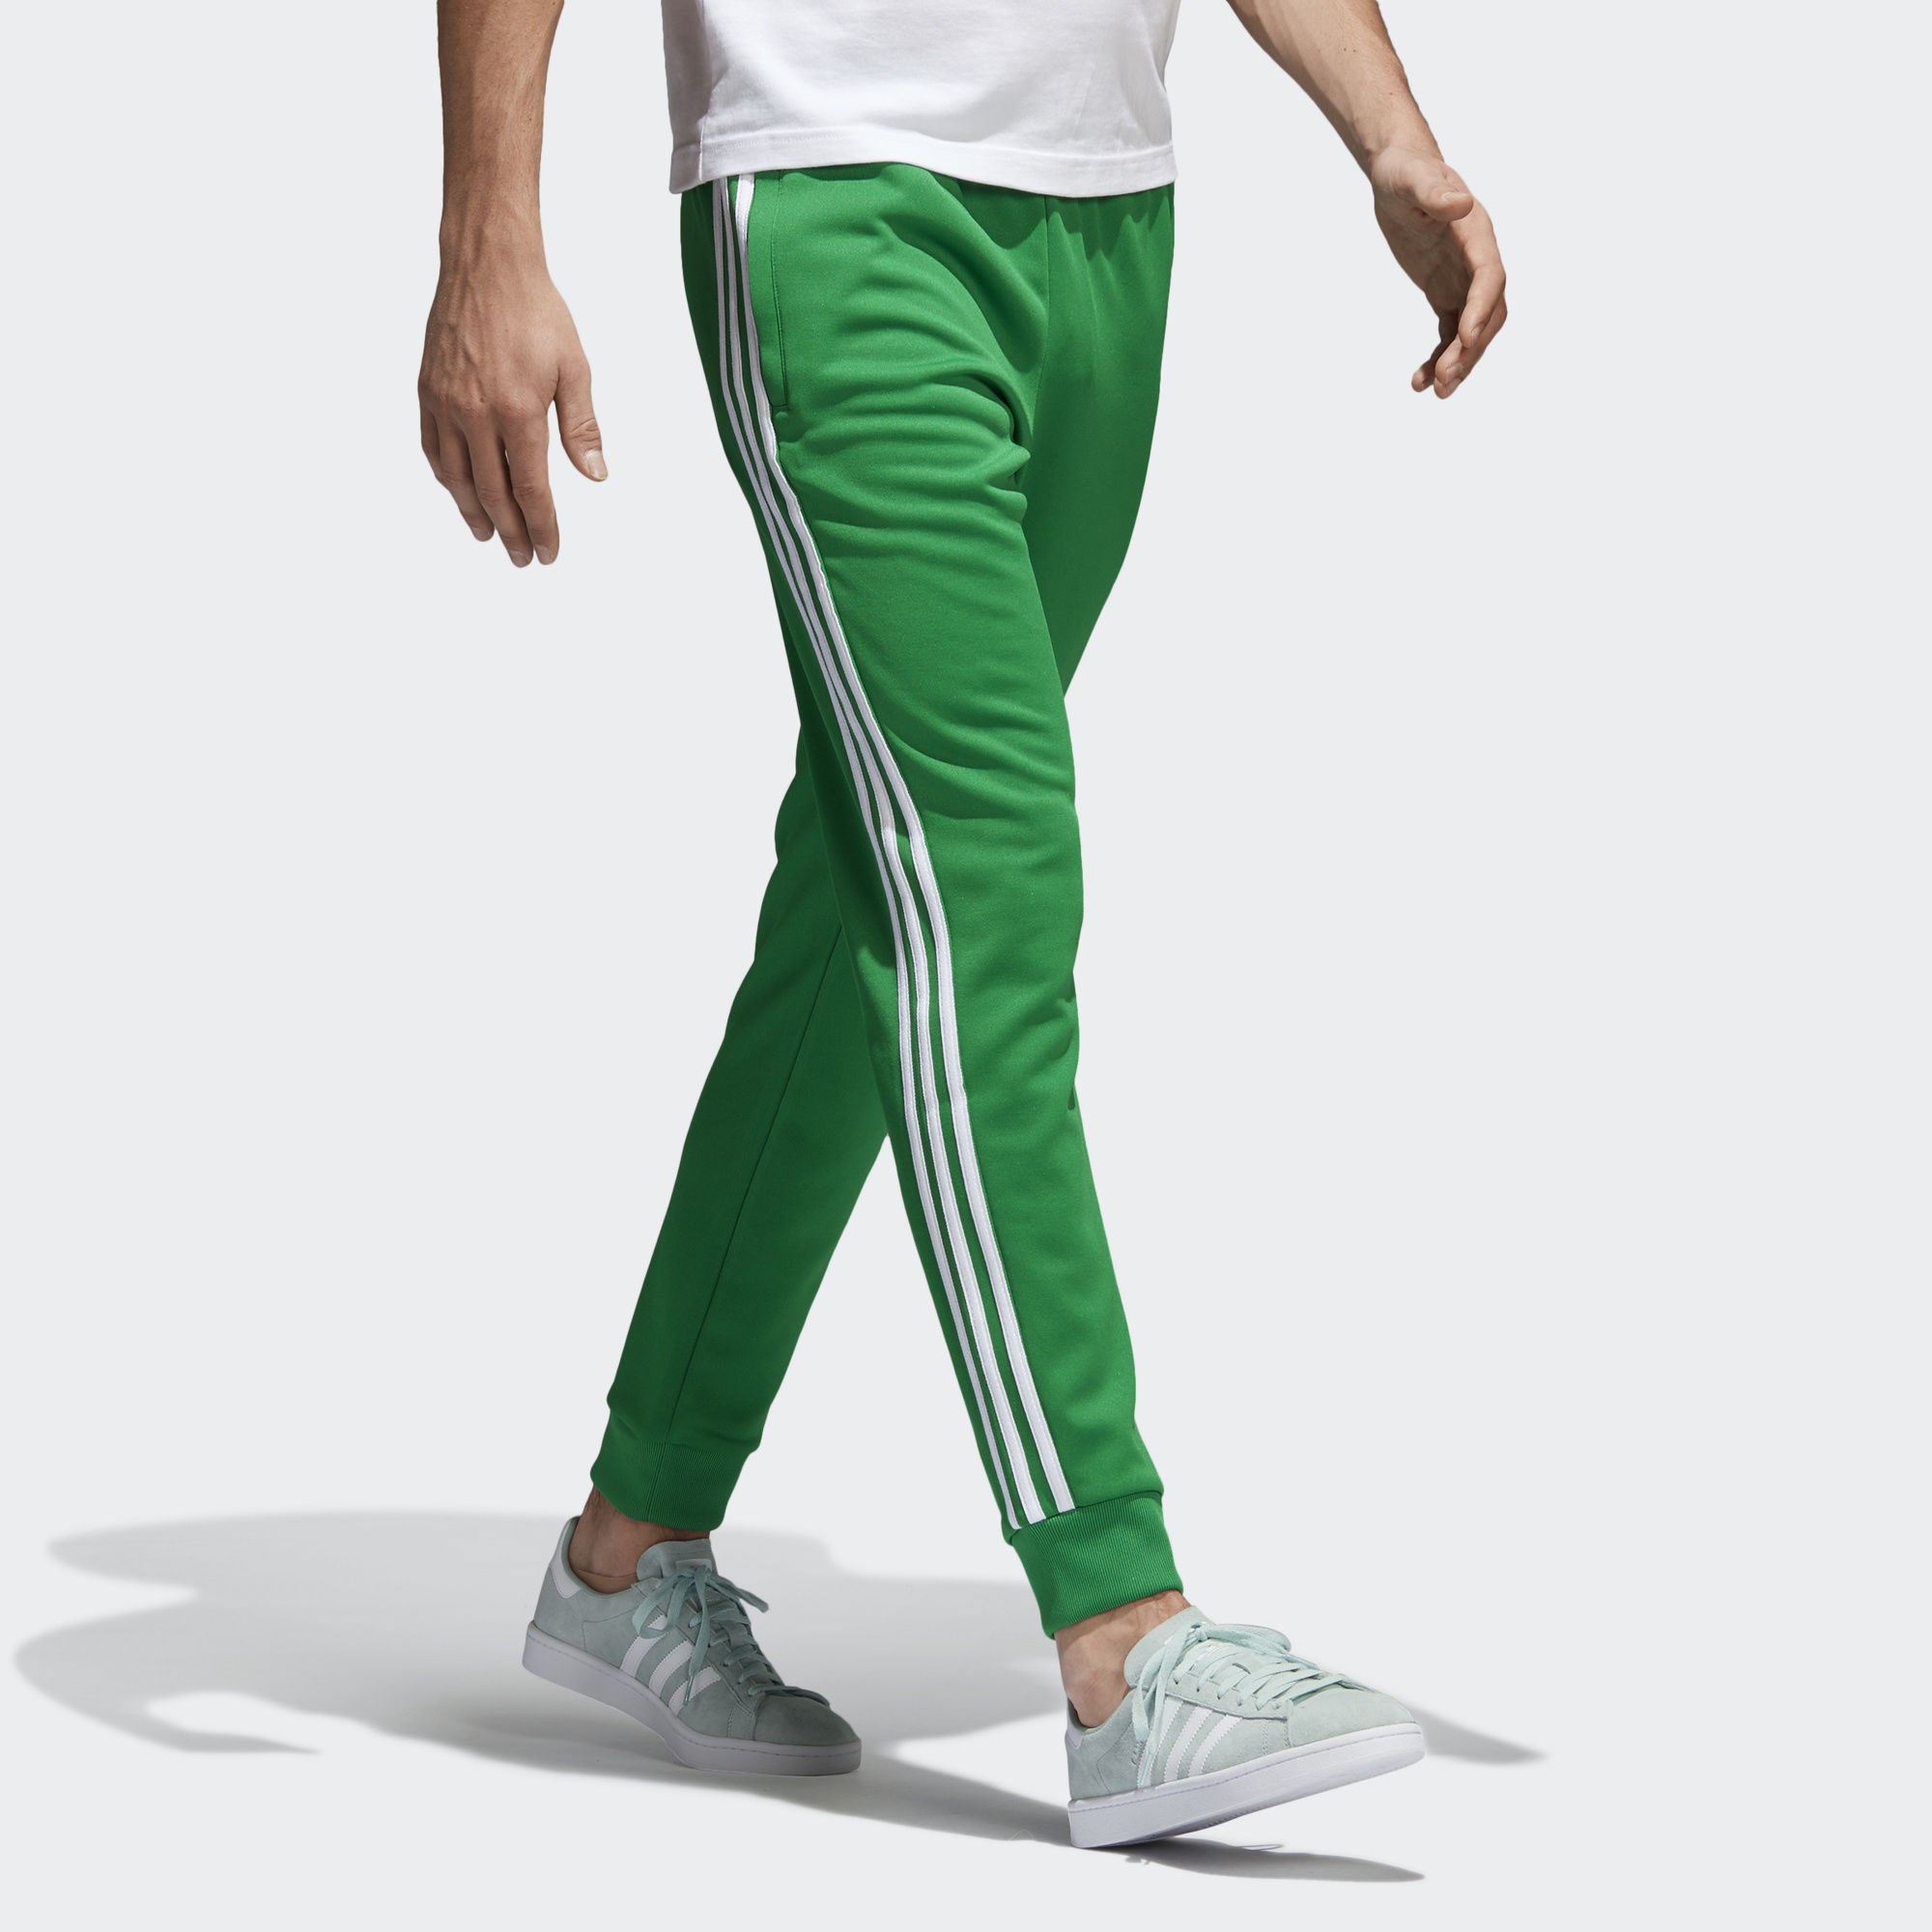 Адидас зеленый спортивный. Adidas SST track Pants. Брюки adidas SST зеленые. Adidas track Pants мужские. Штаны adidas Originals зеленые.